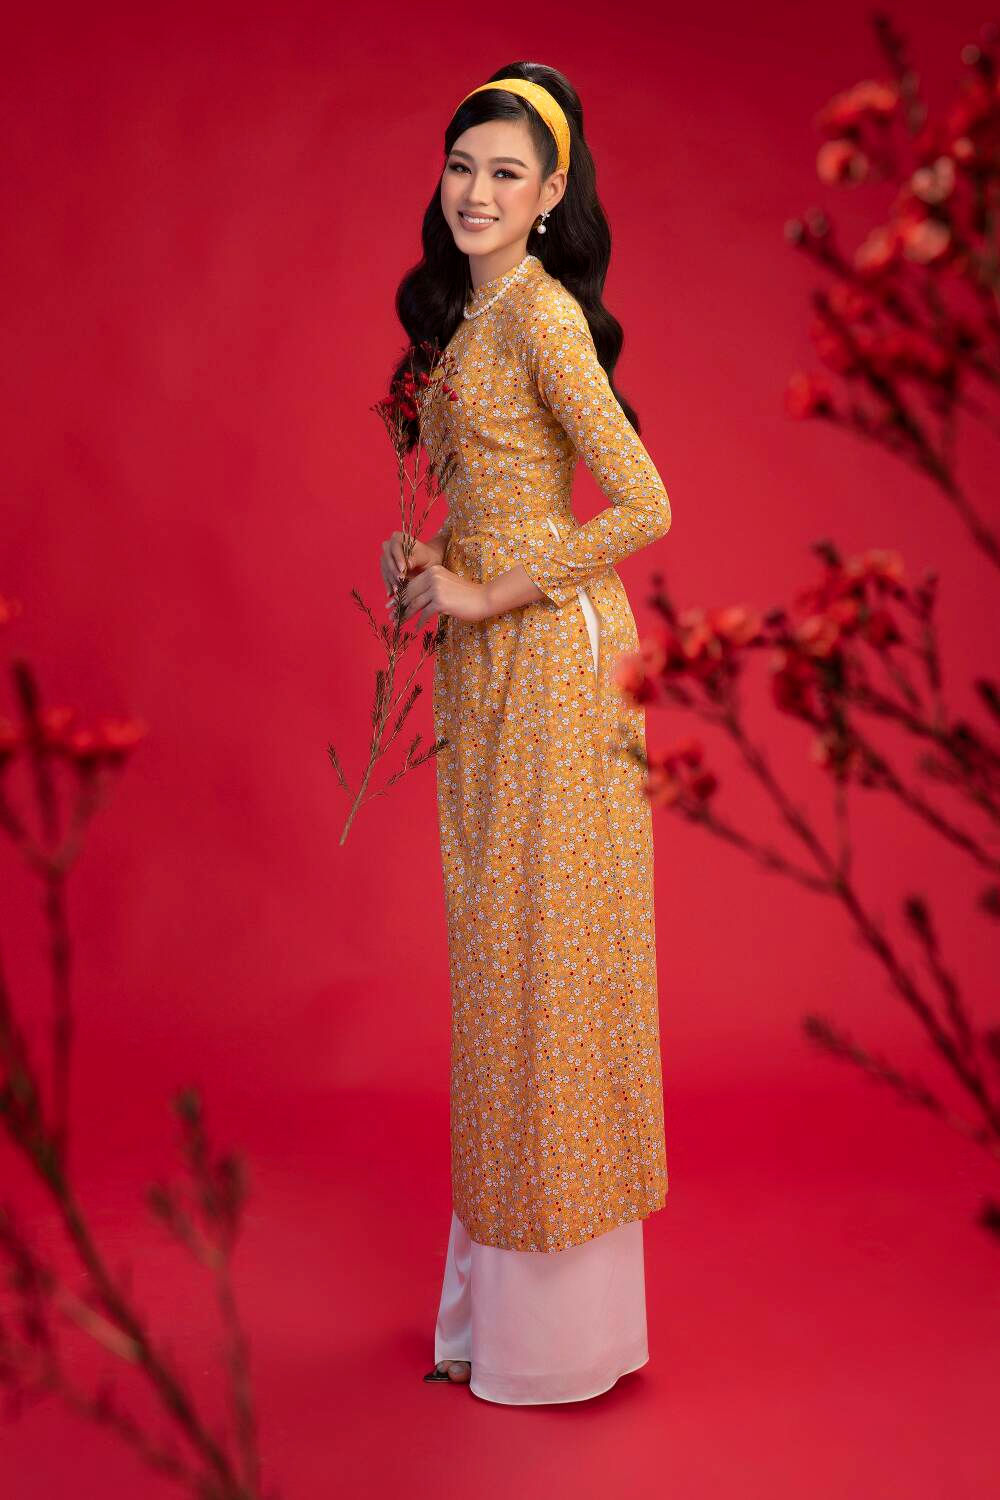 Top 3 Hoa hậu Việt Nam 2020 Đỗ Hà - Phương Anh - Ngọc Thảo chào xuân 'ngọt lịm' với áo dài cổ điển Ảnh 6